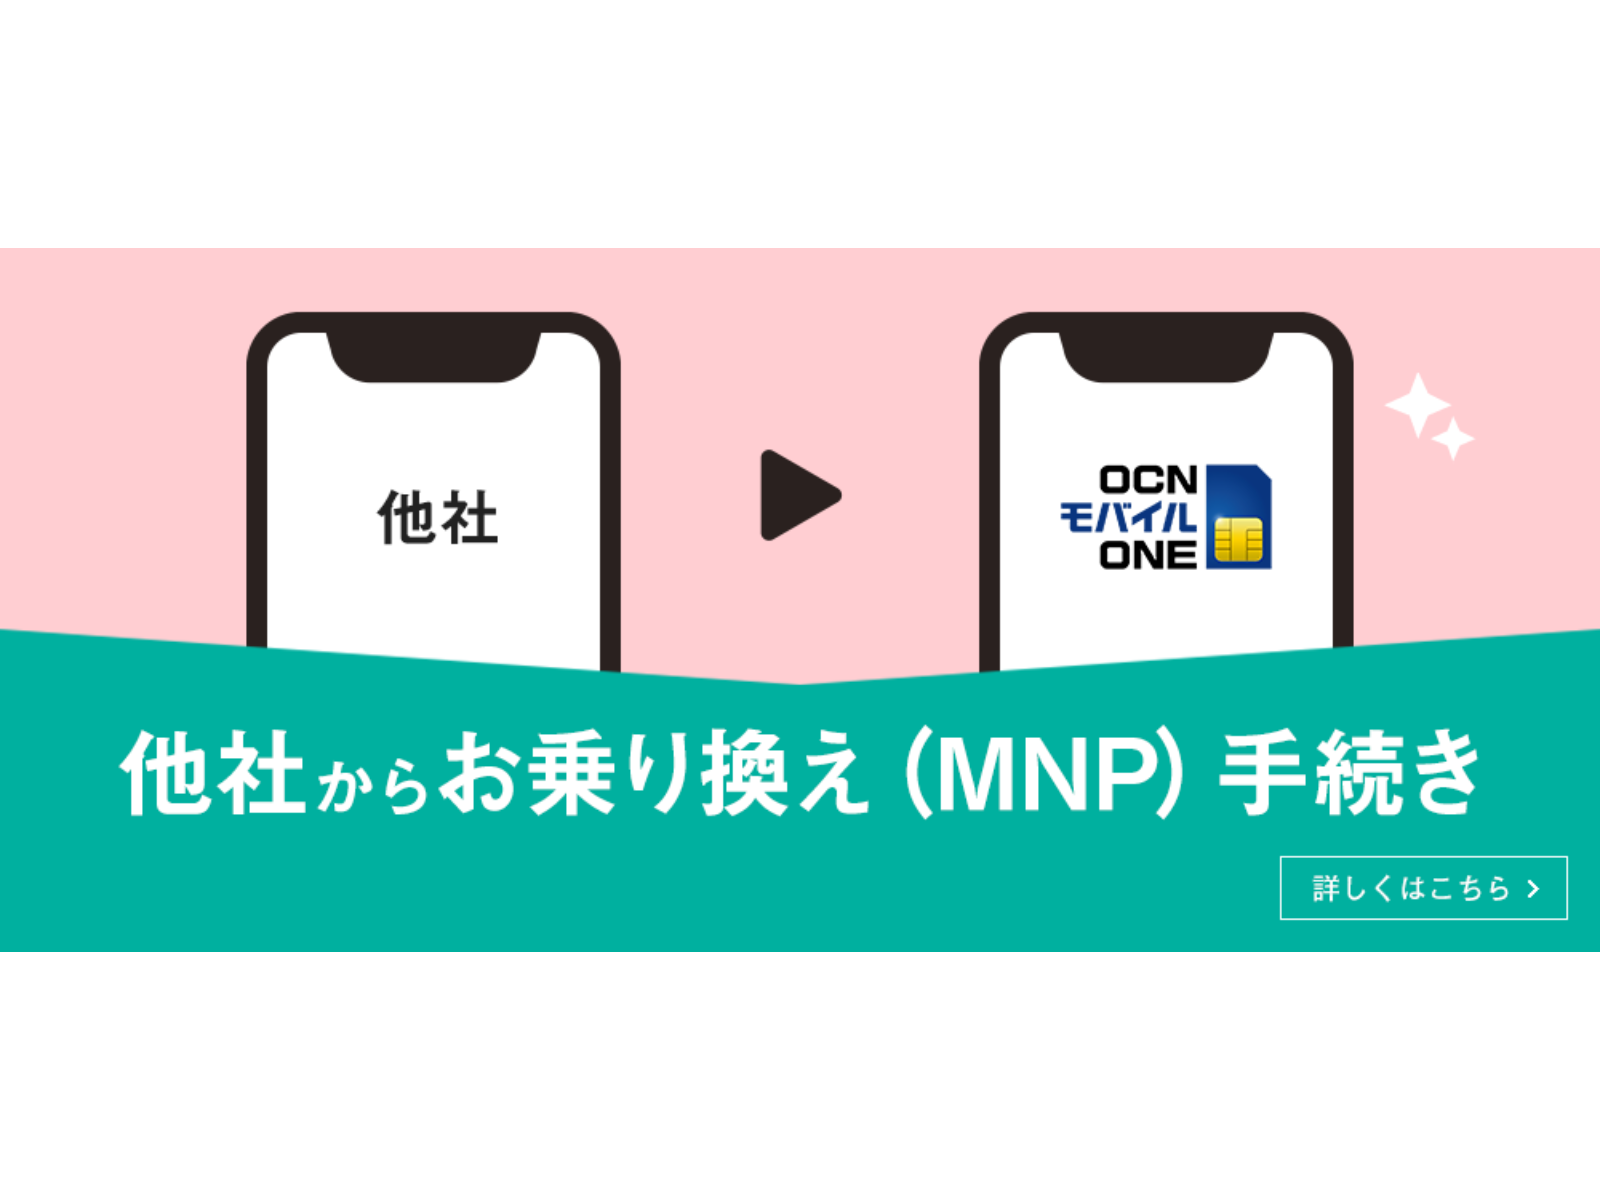 OCN モバイル ONE 広告バナー